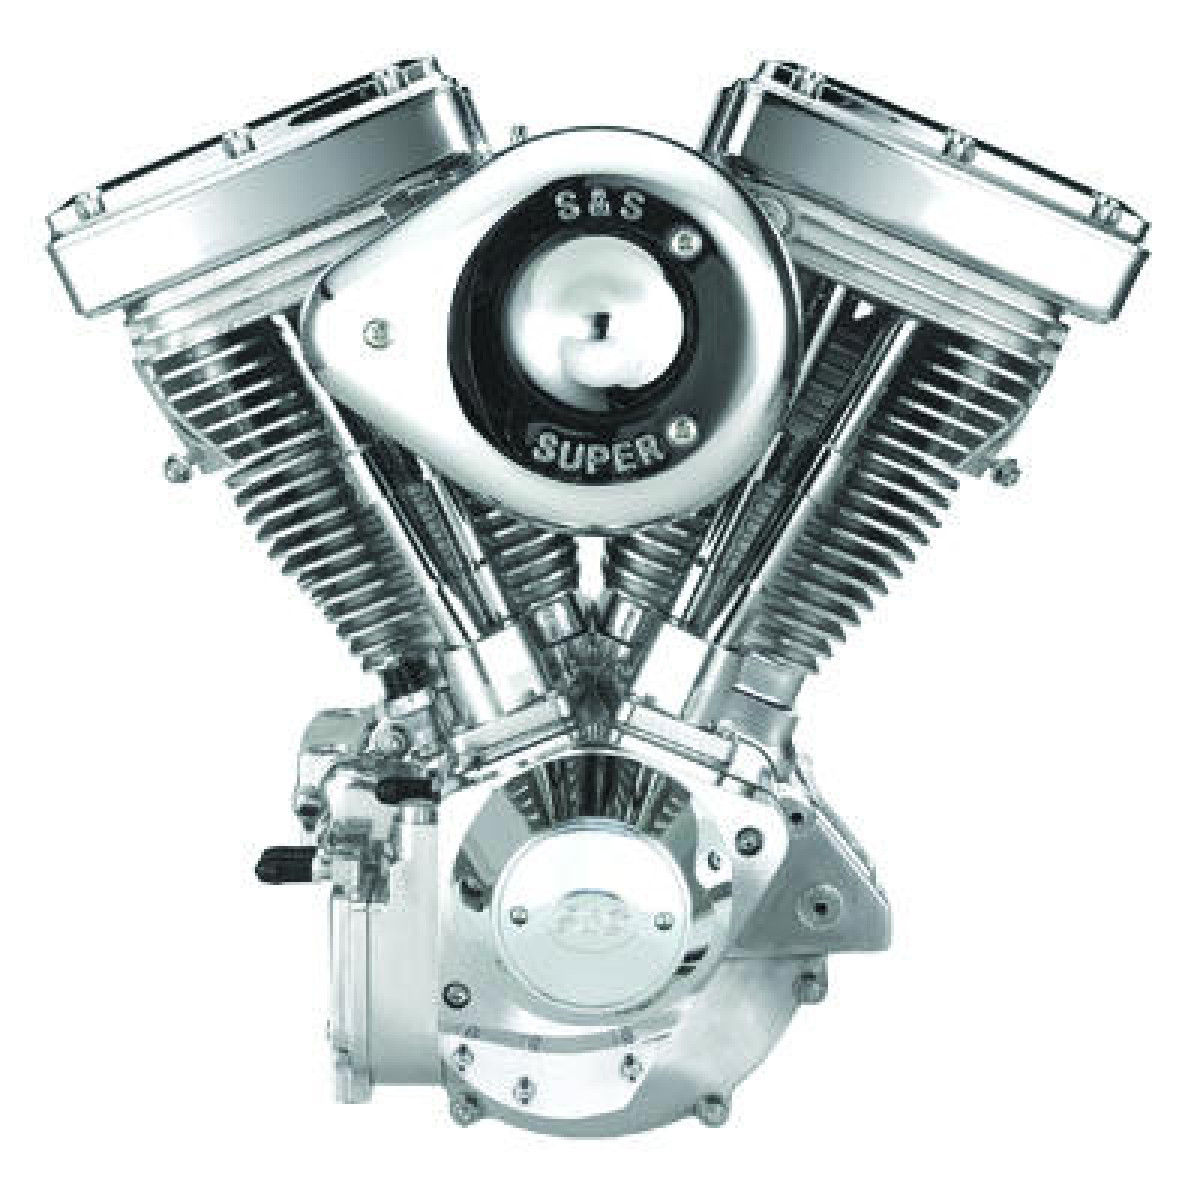 HARLEY DAVIDSON S&S Engine V93 Silver(COMPLETE) FL, FX BELT DRIVE (NON EFI)